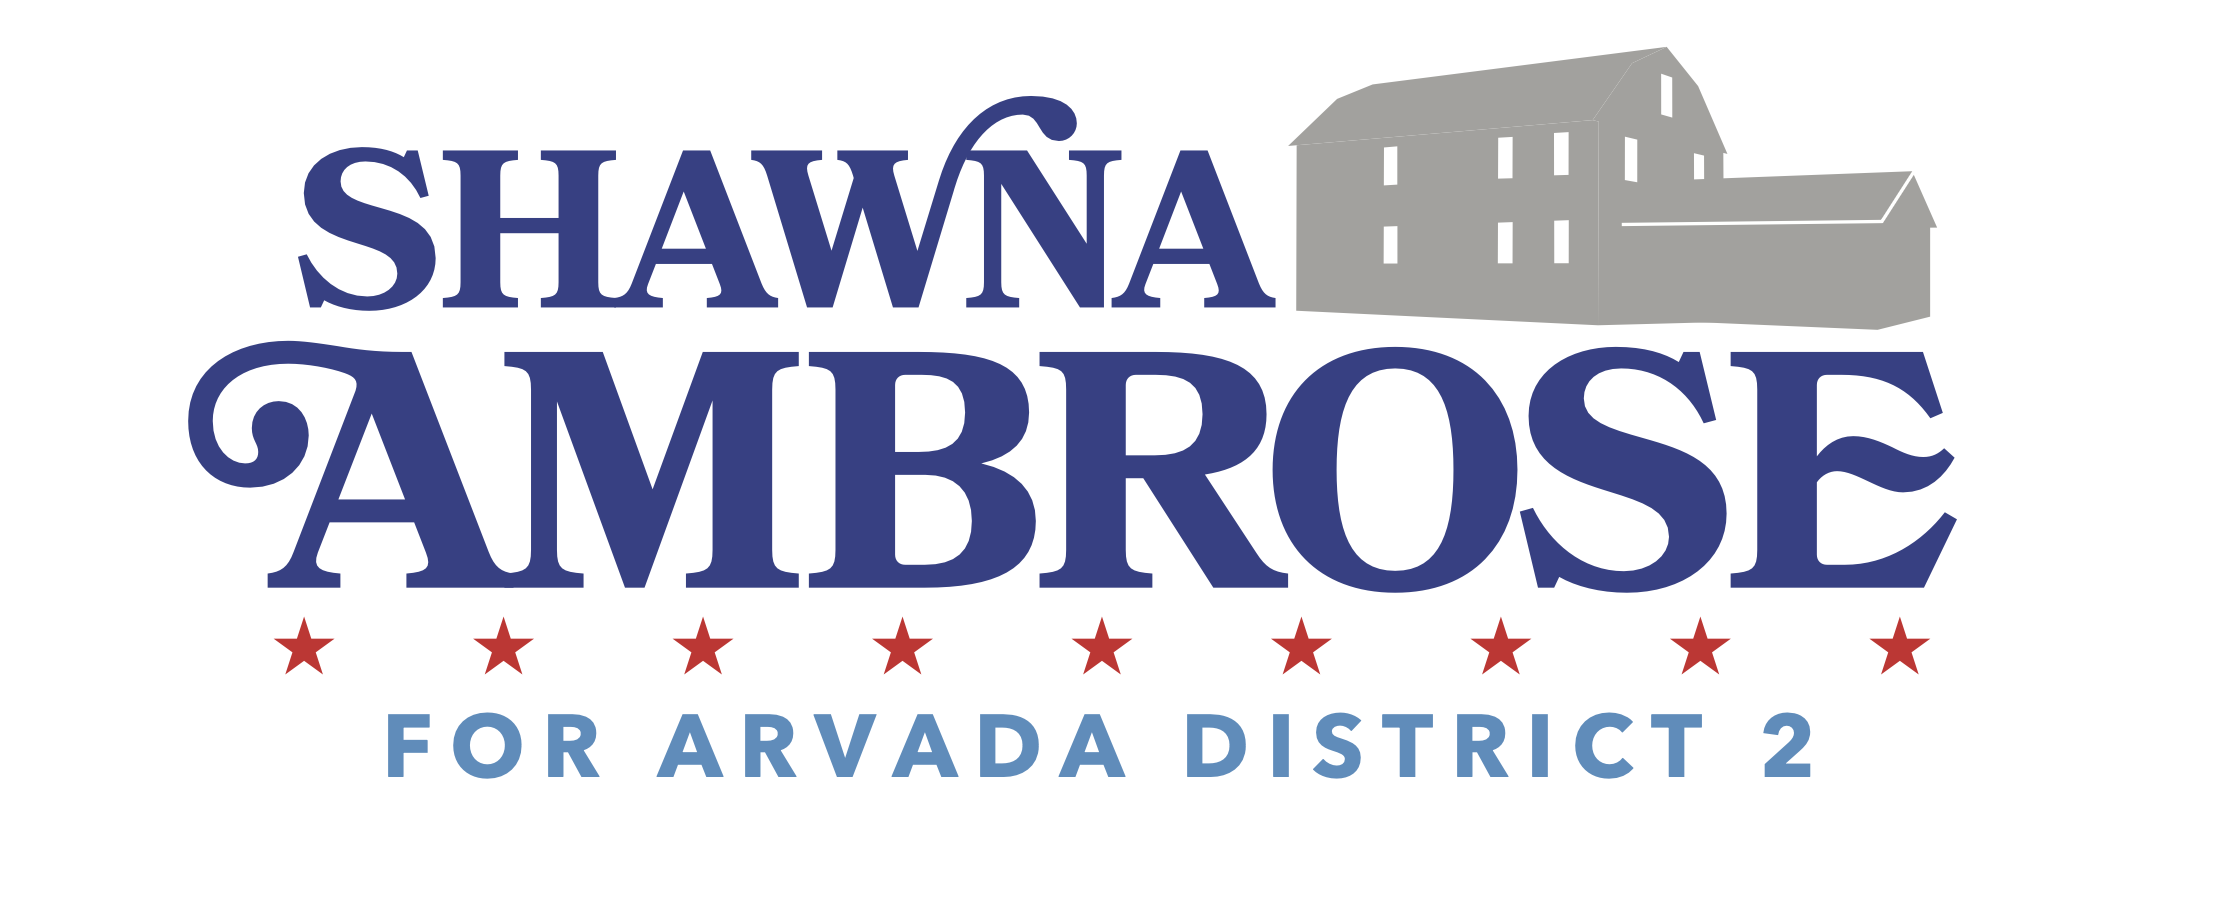 Shawna For Arvada logo